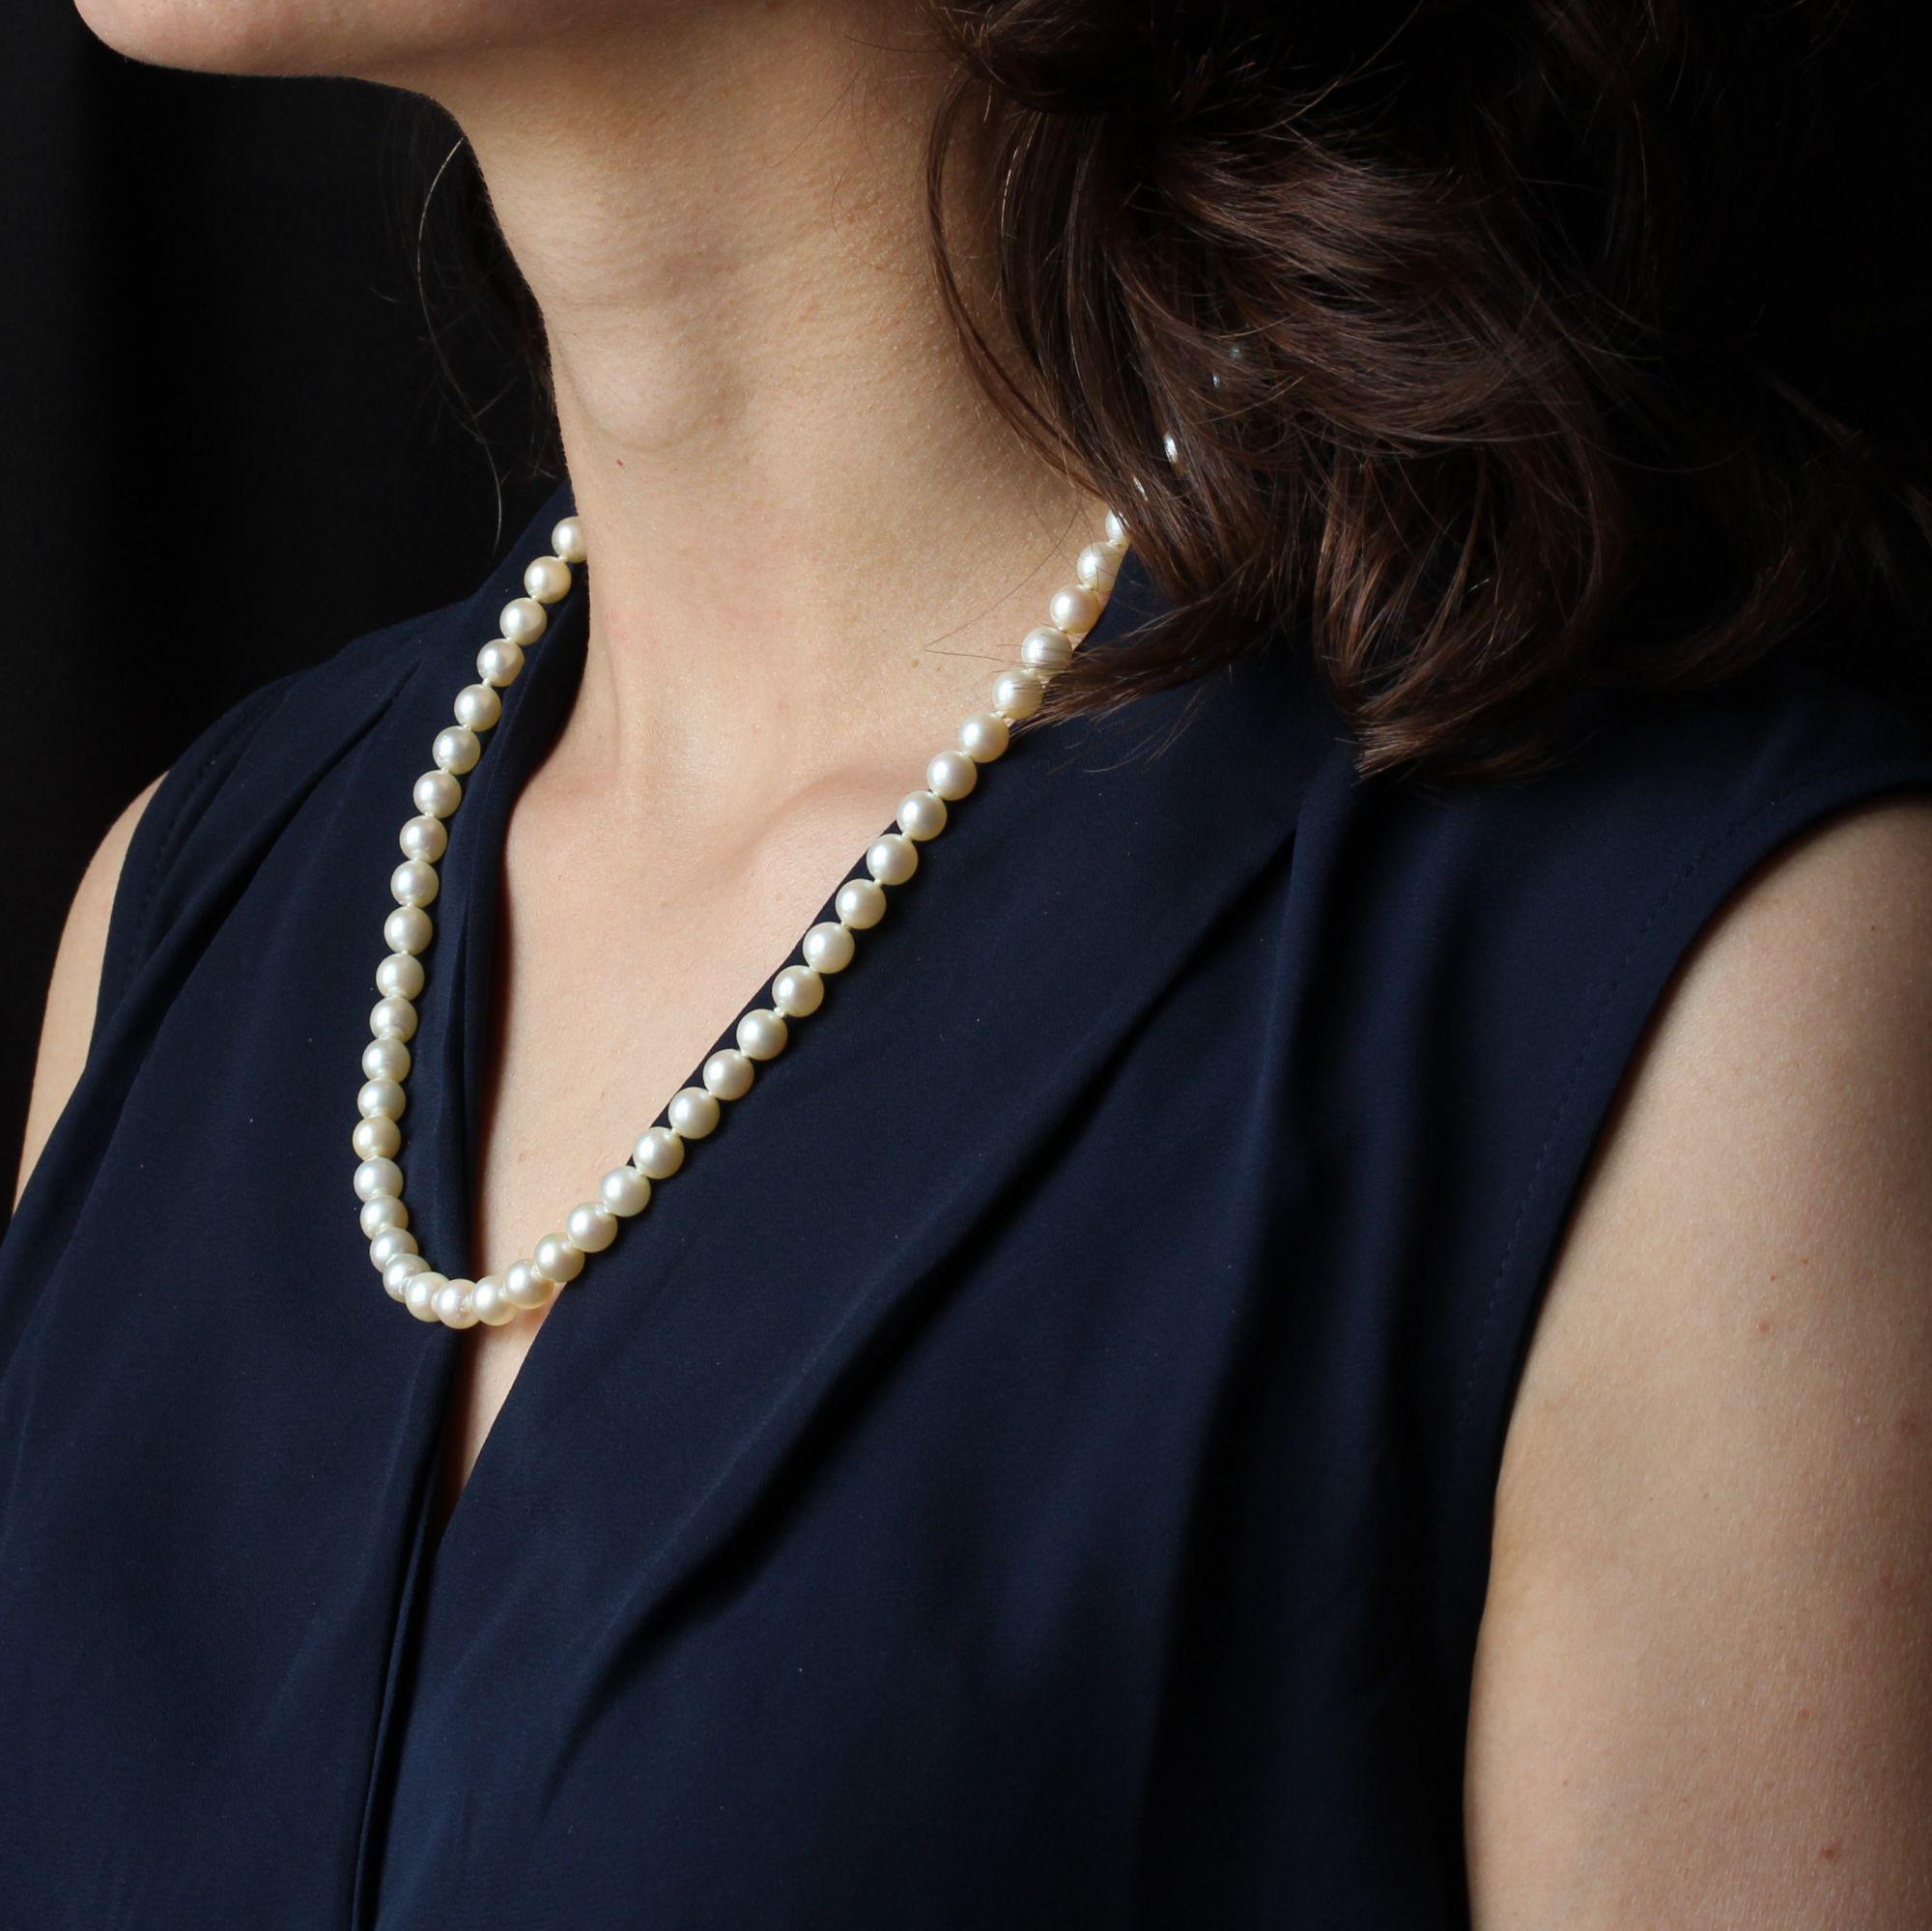 Collier de perles de culture de couleur blanc nacré de taille identique.
Il a un fermoir à cliquet qui se trouve dans une perle à l'extrémité. Elle est en or jaune 18 carats, poinçon tête d'aigle et est accompagnée d'une chaîne de sécurité avec